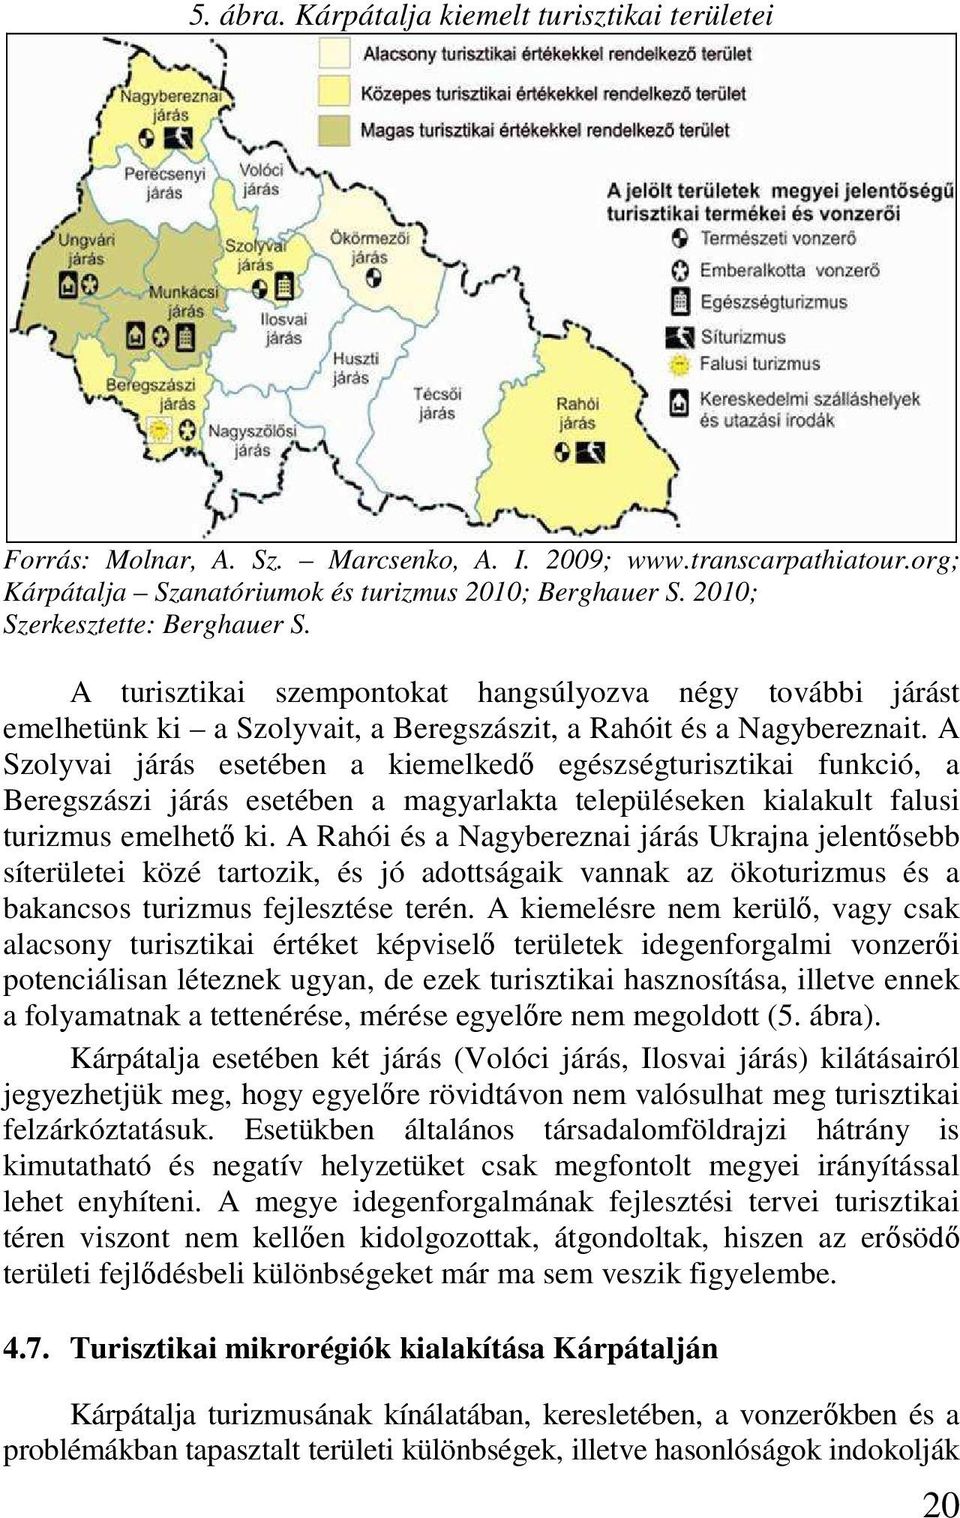 A Szolyvai járás esetében a kiemelkedı egészségturisztikai funkció, a Beregszászi járás esetében a magyarlakta településeken kialakult falusi turizmus emelhetı ki.